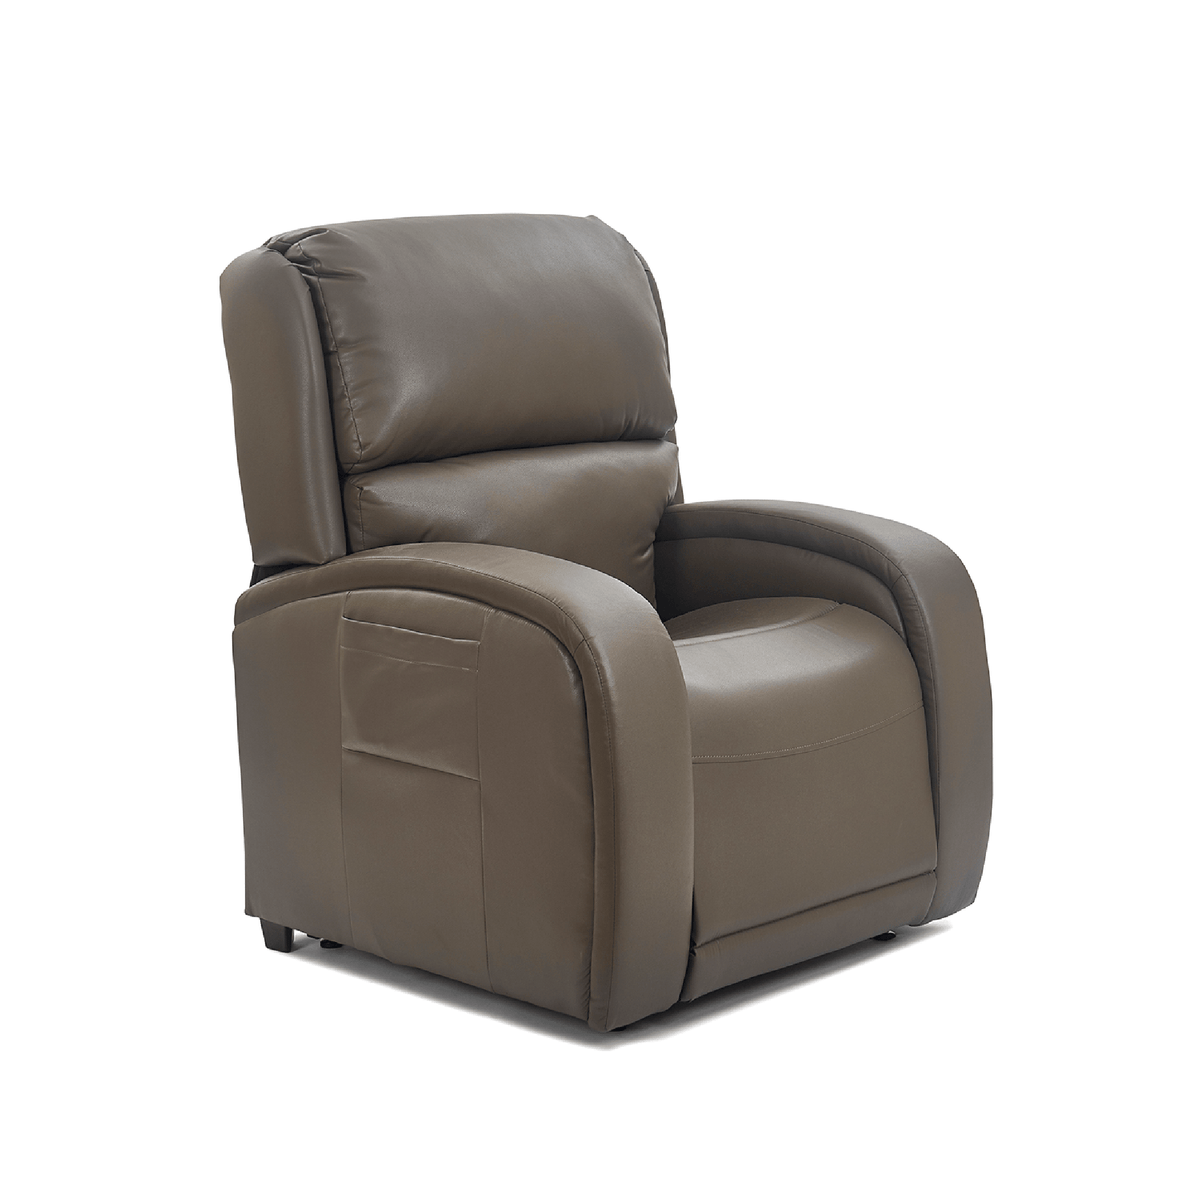 UltraComfort Evren Medium Large Power Lift Chair Recliner